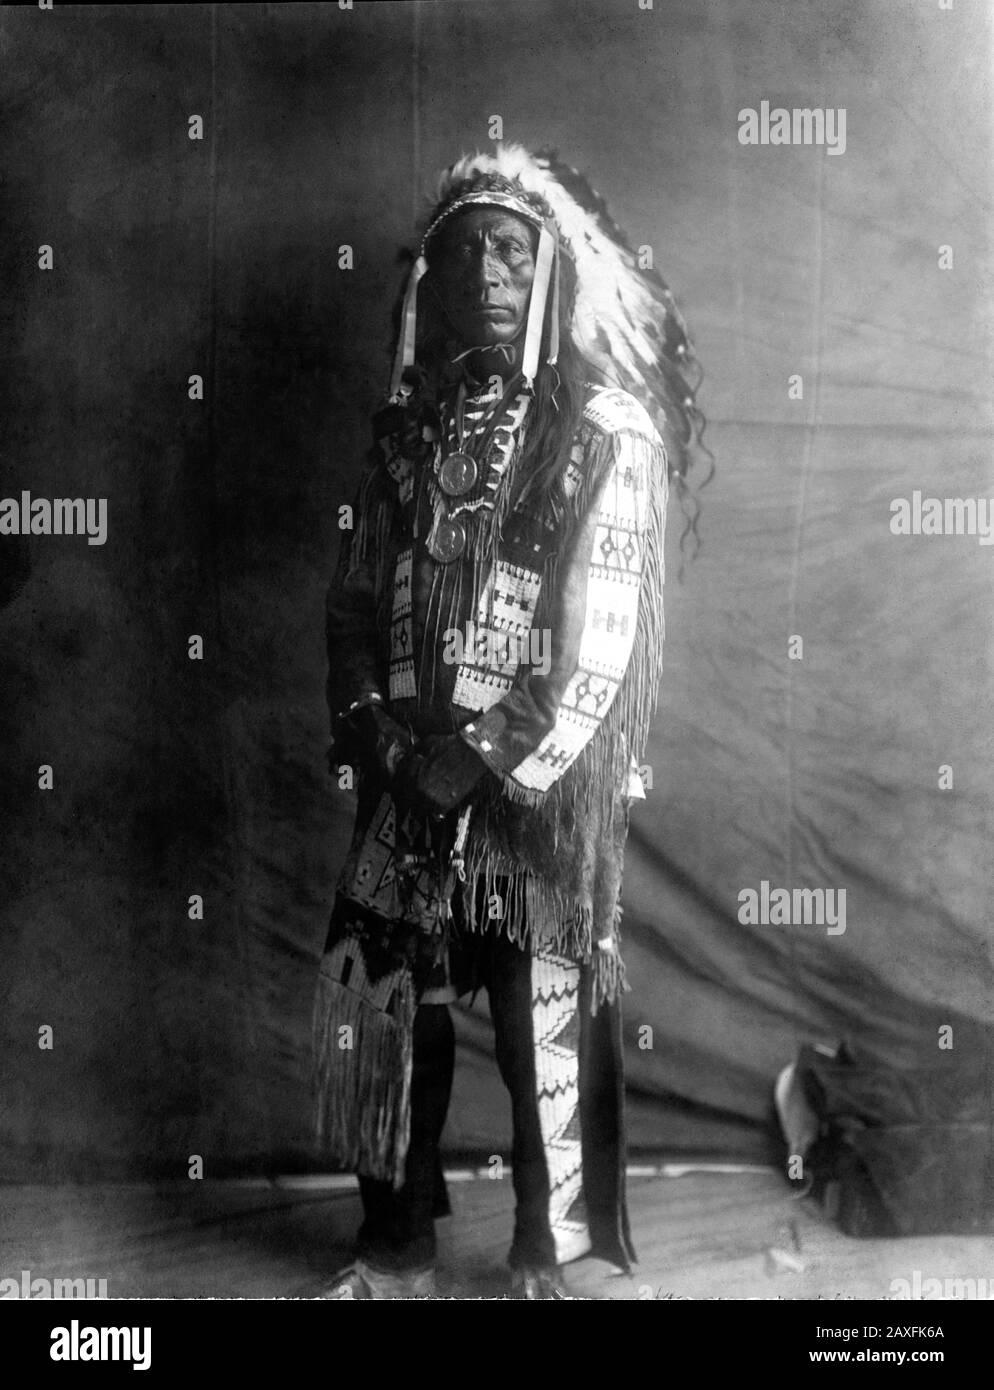 1907, USA: Der amerikanische Native CHIEF Jack Red Cloud of Oglala Lakota ( Sioux ) (* um 1822 in New York; † um 1909 in London). Foto von Edward S. CURTIS (* ca. - CAPO NUVOLA ROSSA - Der nordamerikanische Inder - GESCHICHTE - Foto Storiche - Warbonnet - Foto storica - Indianer - INDIANI D' AMERICA - PELLEROSSA - ureinwohner amerikaner - Indianer Nordamerikas - CAPO TRIBU' INDIANO - GUERRIERO - KRIEGER - Porträt - Ritratto - SELVAGGIO WEST - Piuma - Piume - Federn - STOCK - Halskette - Collana - Fransen - Frangie - Frangie © Archivio GBB / Stockfoto